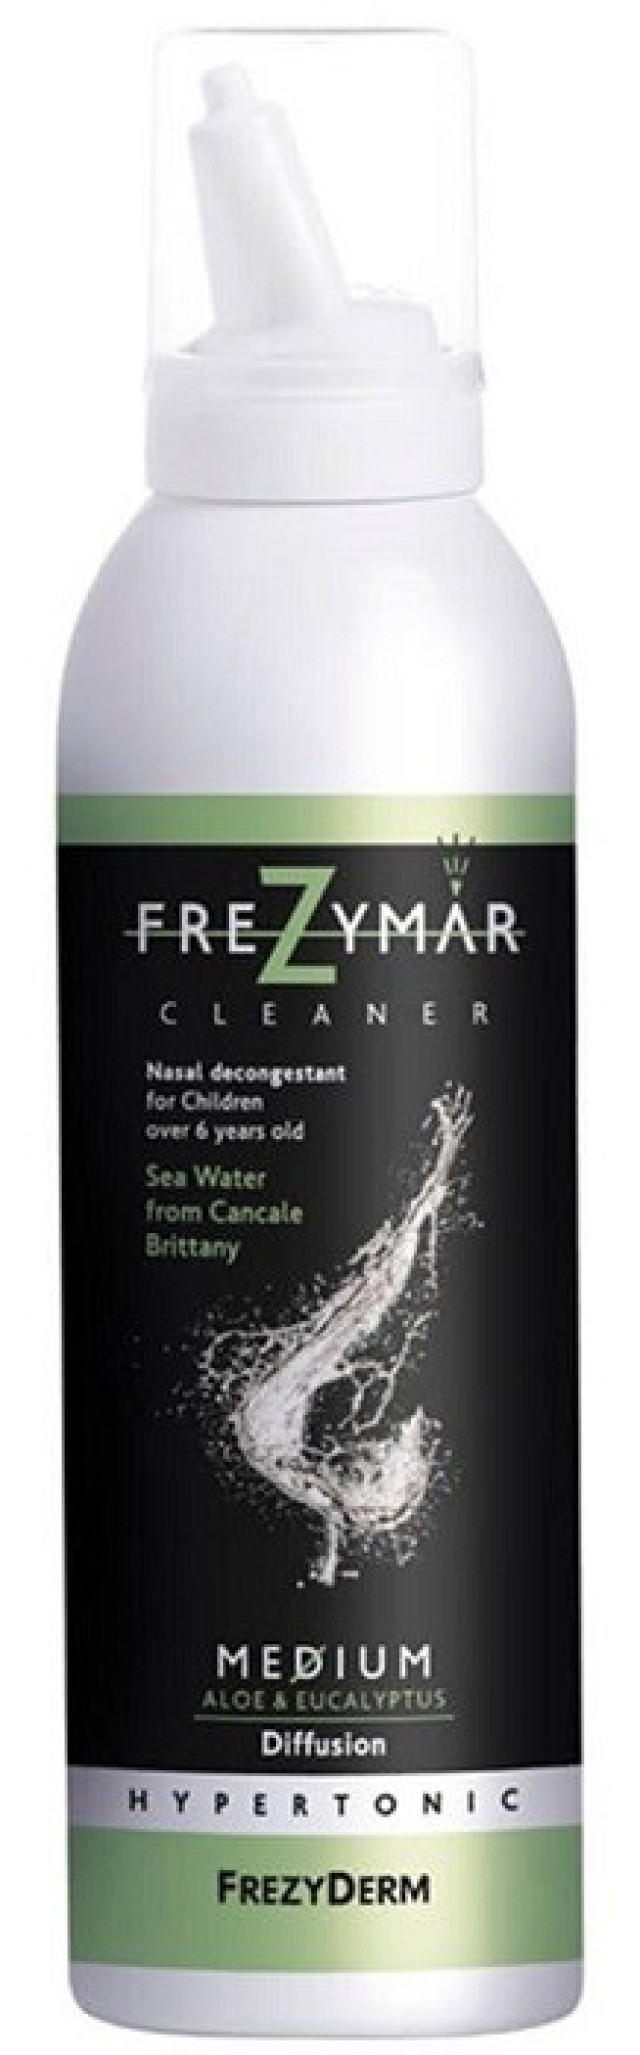 Frezyderm Frezymar Cleaner Medium Ρινικό Αποσυμφορητικό με Αλόη & Ευκάλυπτο για Παιδιά Άνω των 6 Ετών 120ml